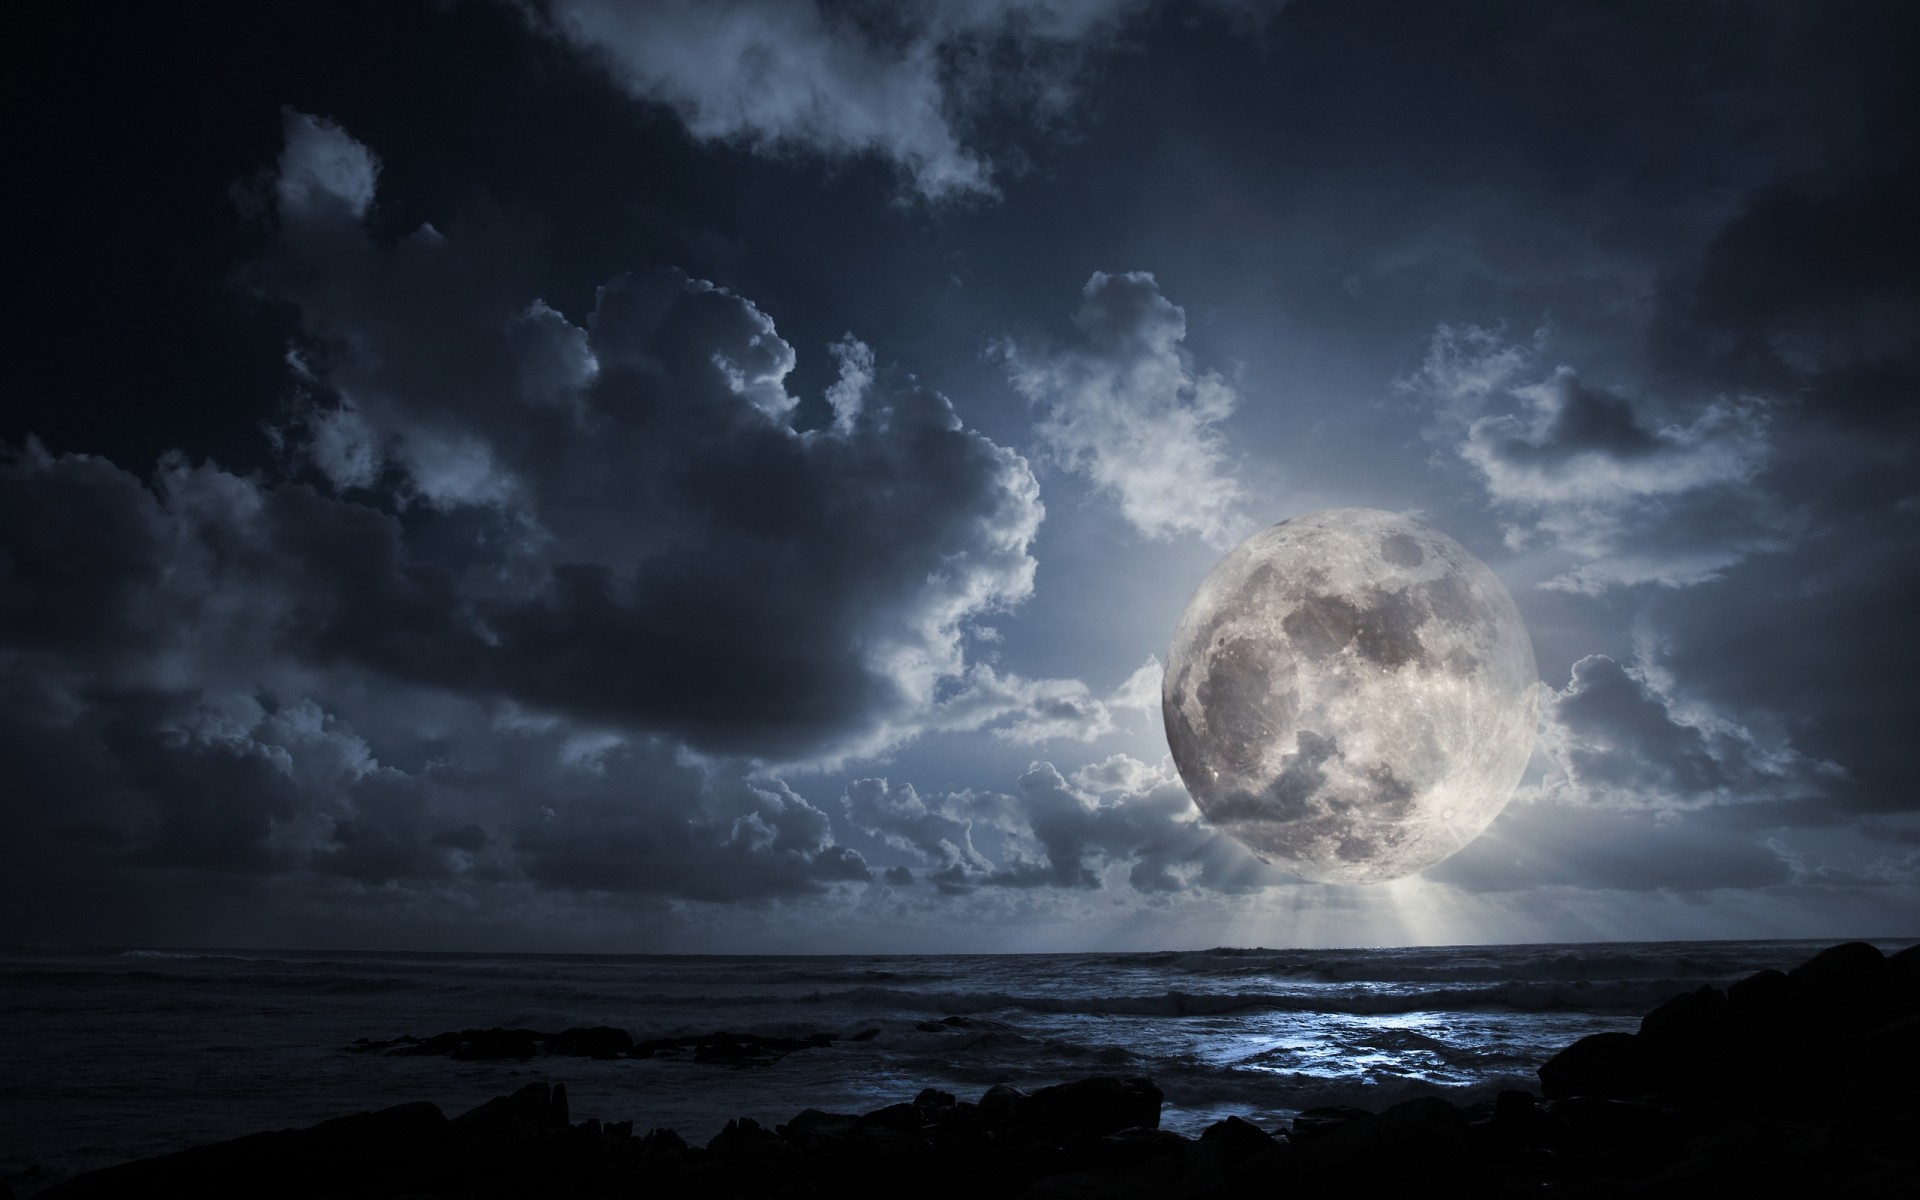 космос воды небо луна шторм природа океан море пейзаж закат темный солнце драматические пляж сумрак облако свет дождь рассвет вечером ночь облака